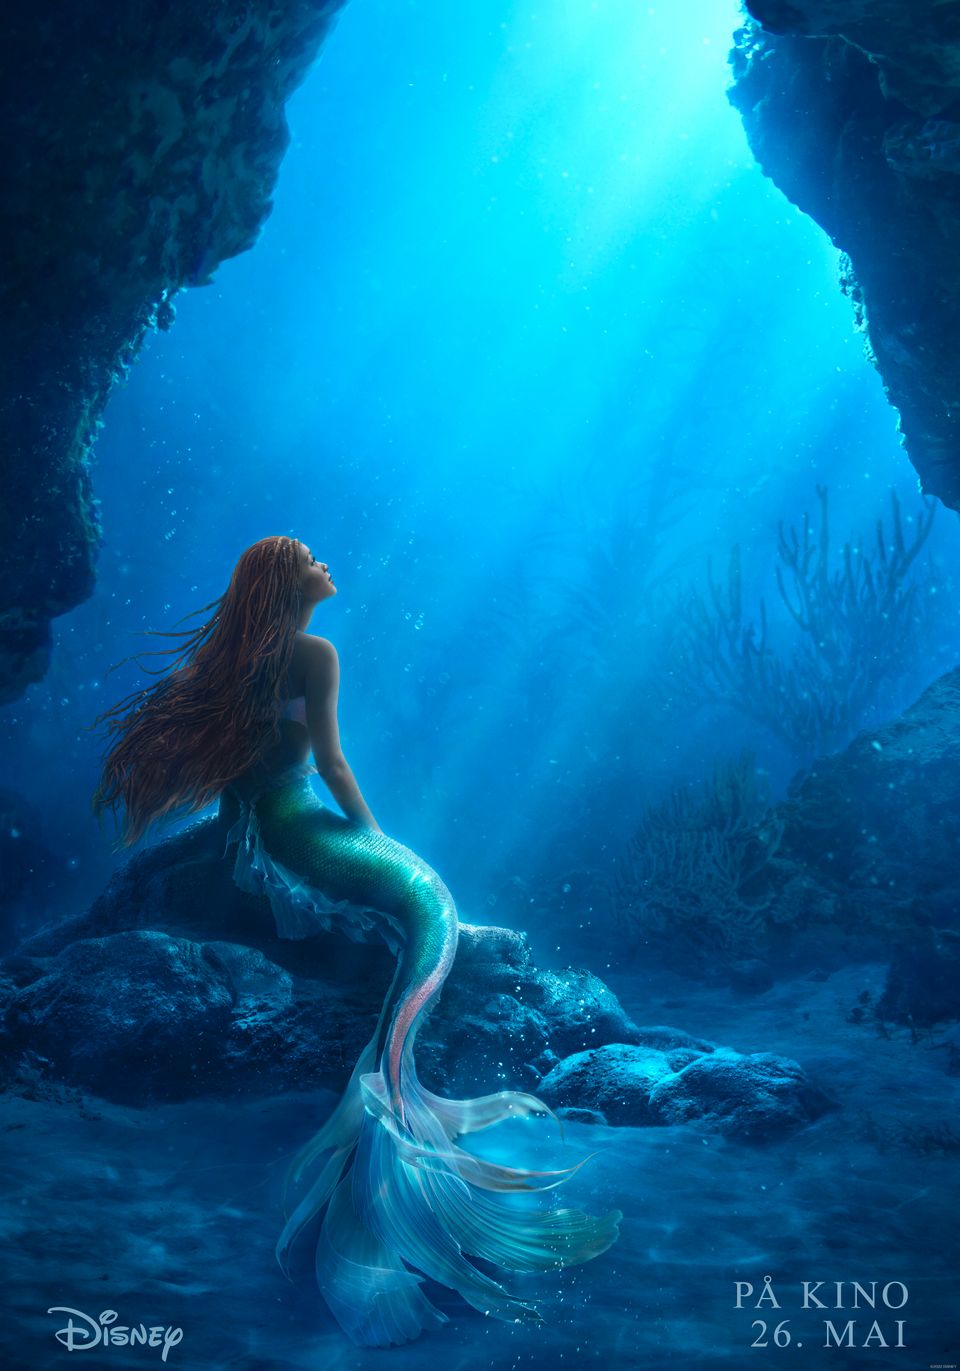 Bilde fra en film som er på havbunnen og det sitter en havfrue med langt rødlig hår som sitter på en stein. 